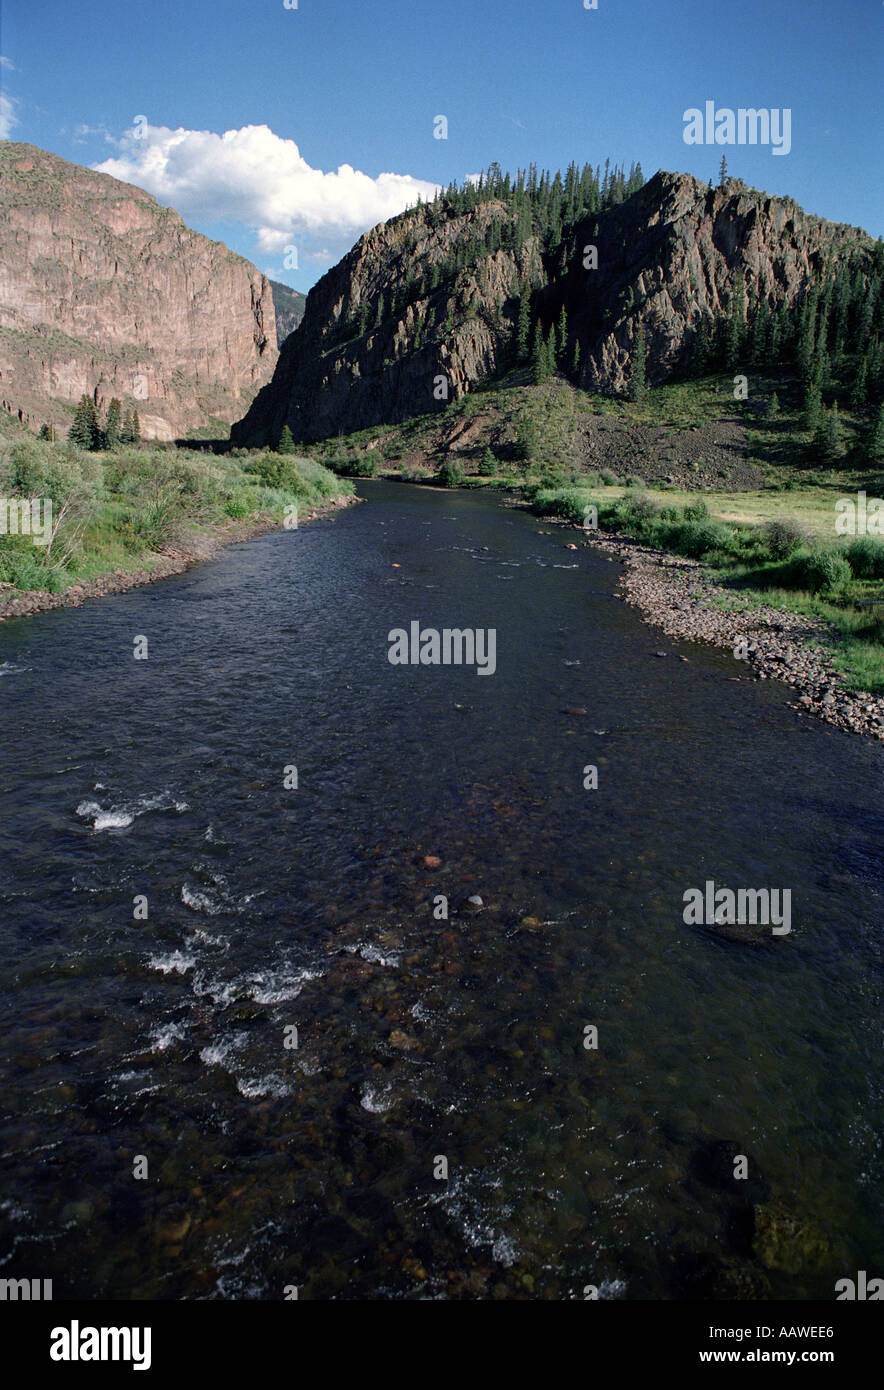 The Rio Grande River Near Its Source In Colorado Stock Photo Alamy